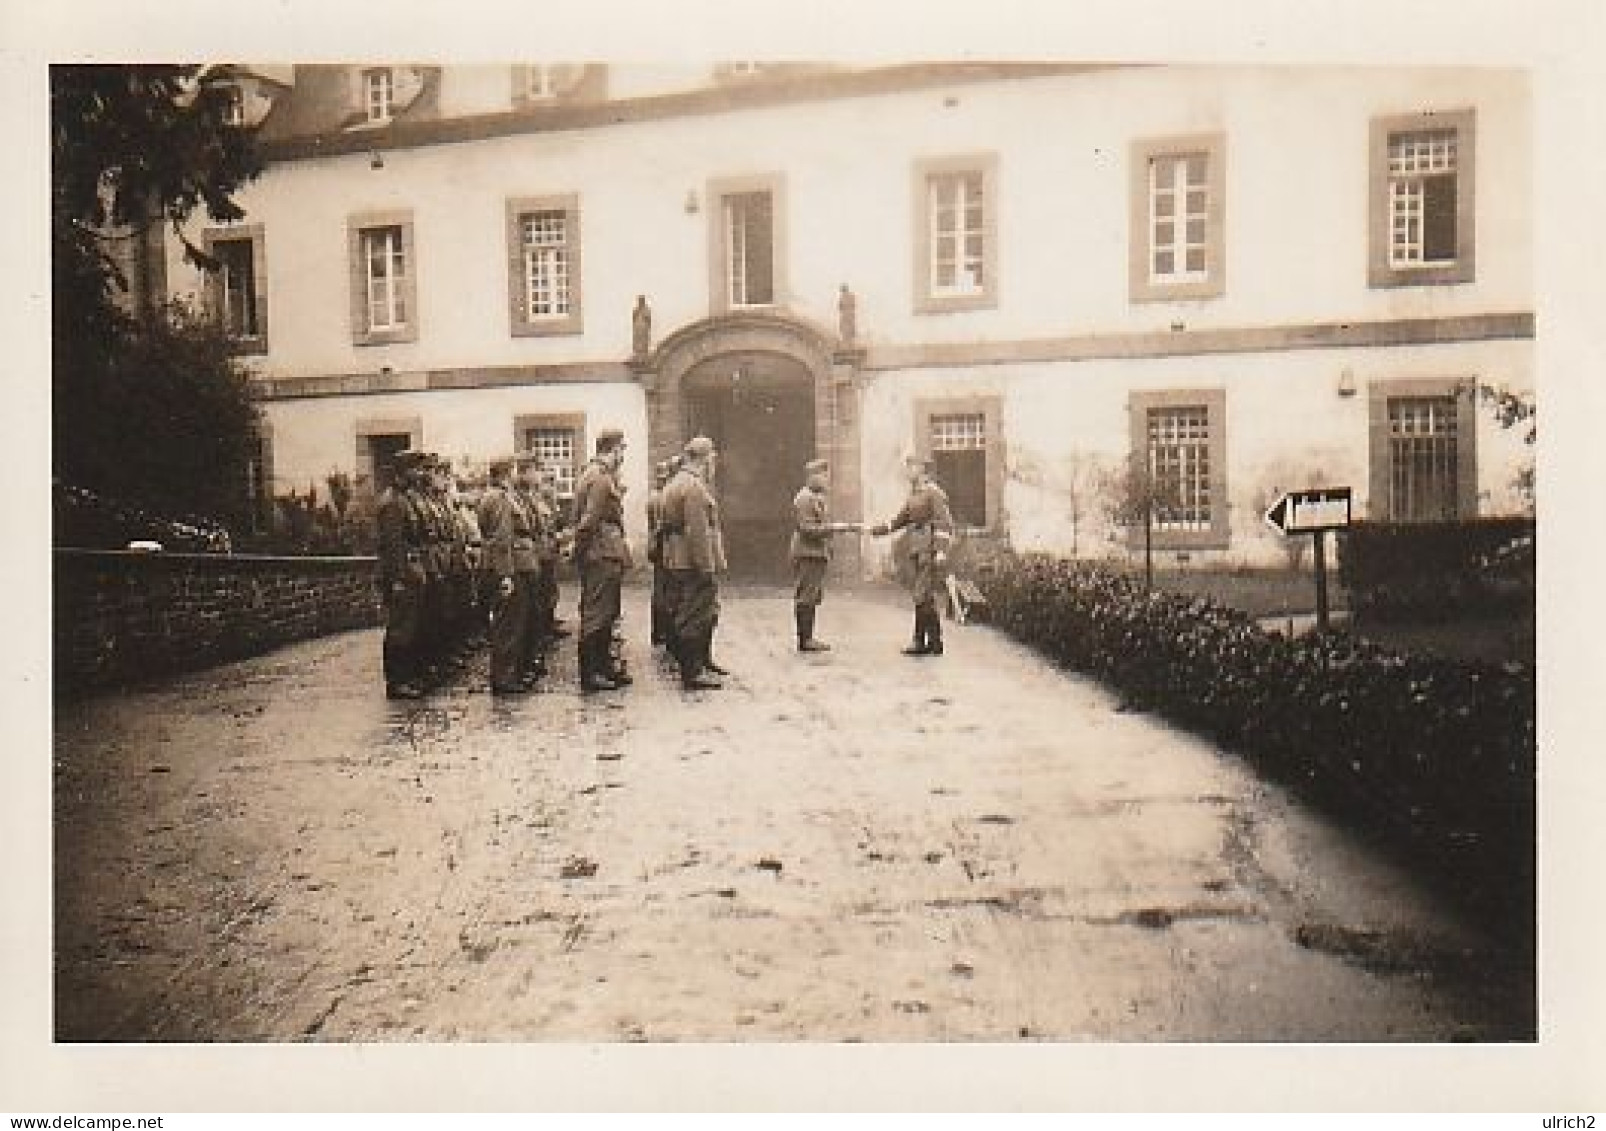 Foto Gruppe Deutsche Soldaten Angetreten - Appell - 2. WK - 8*5cm  (69012) - Krieg, Militär